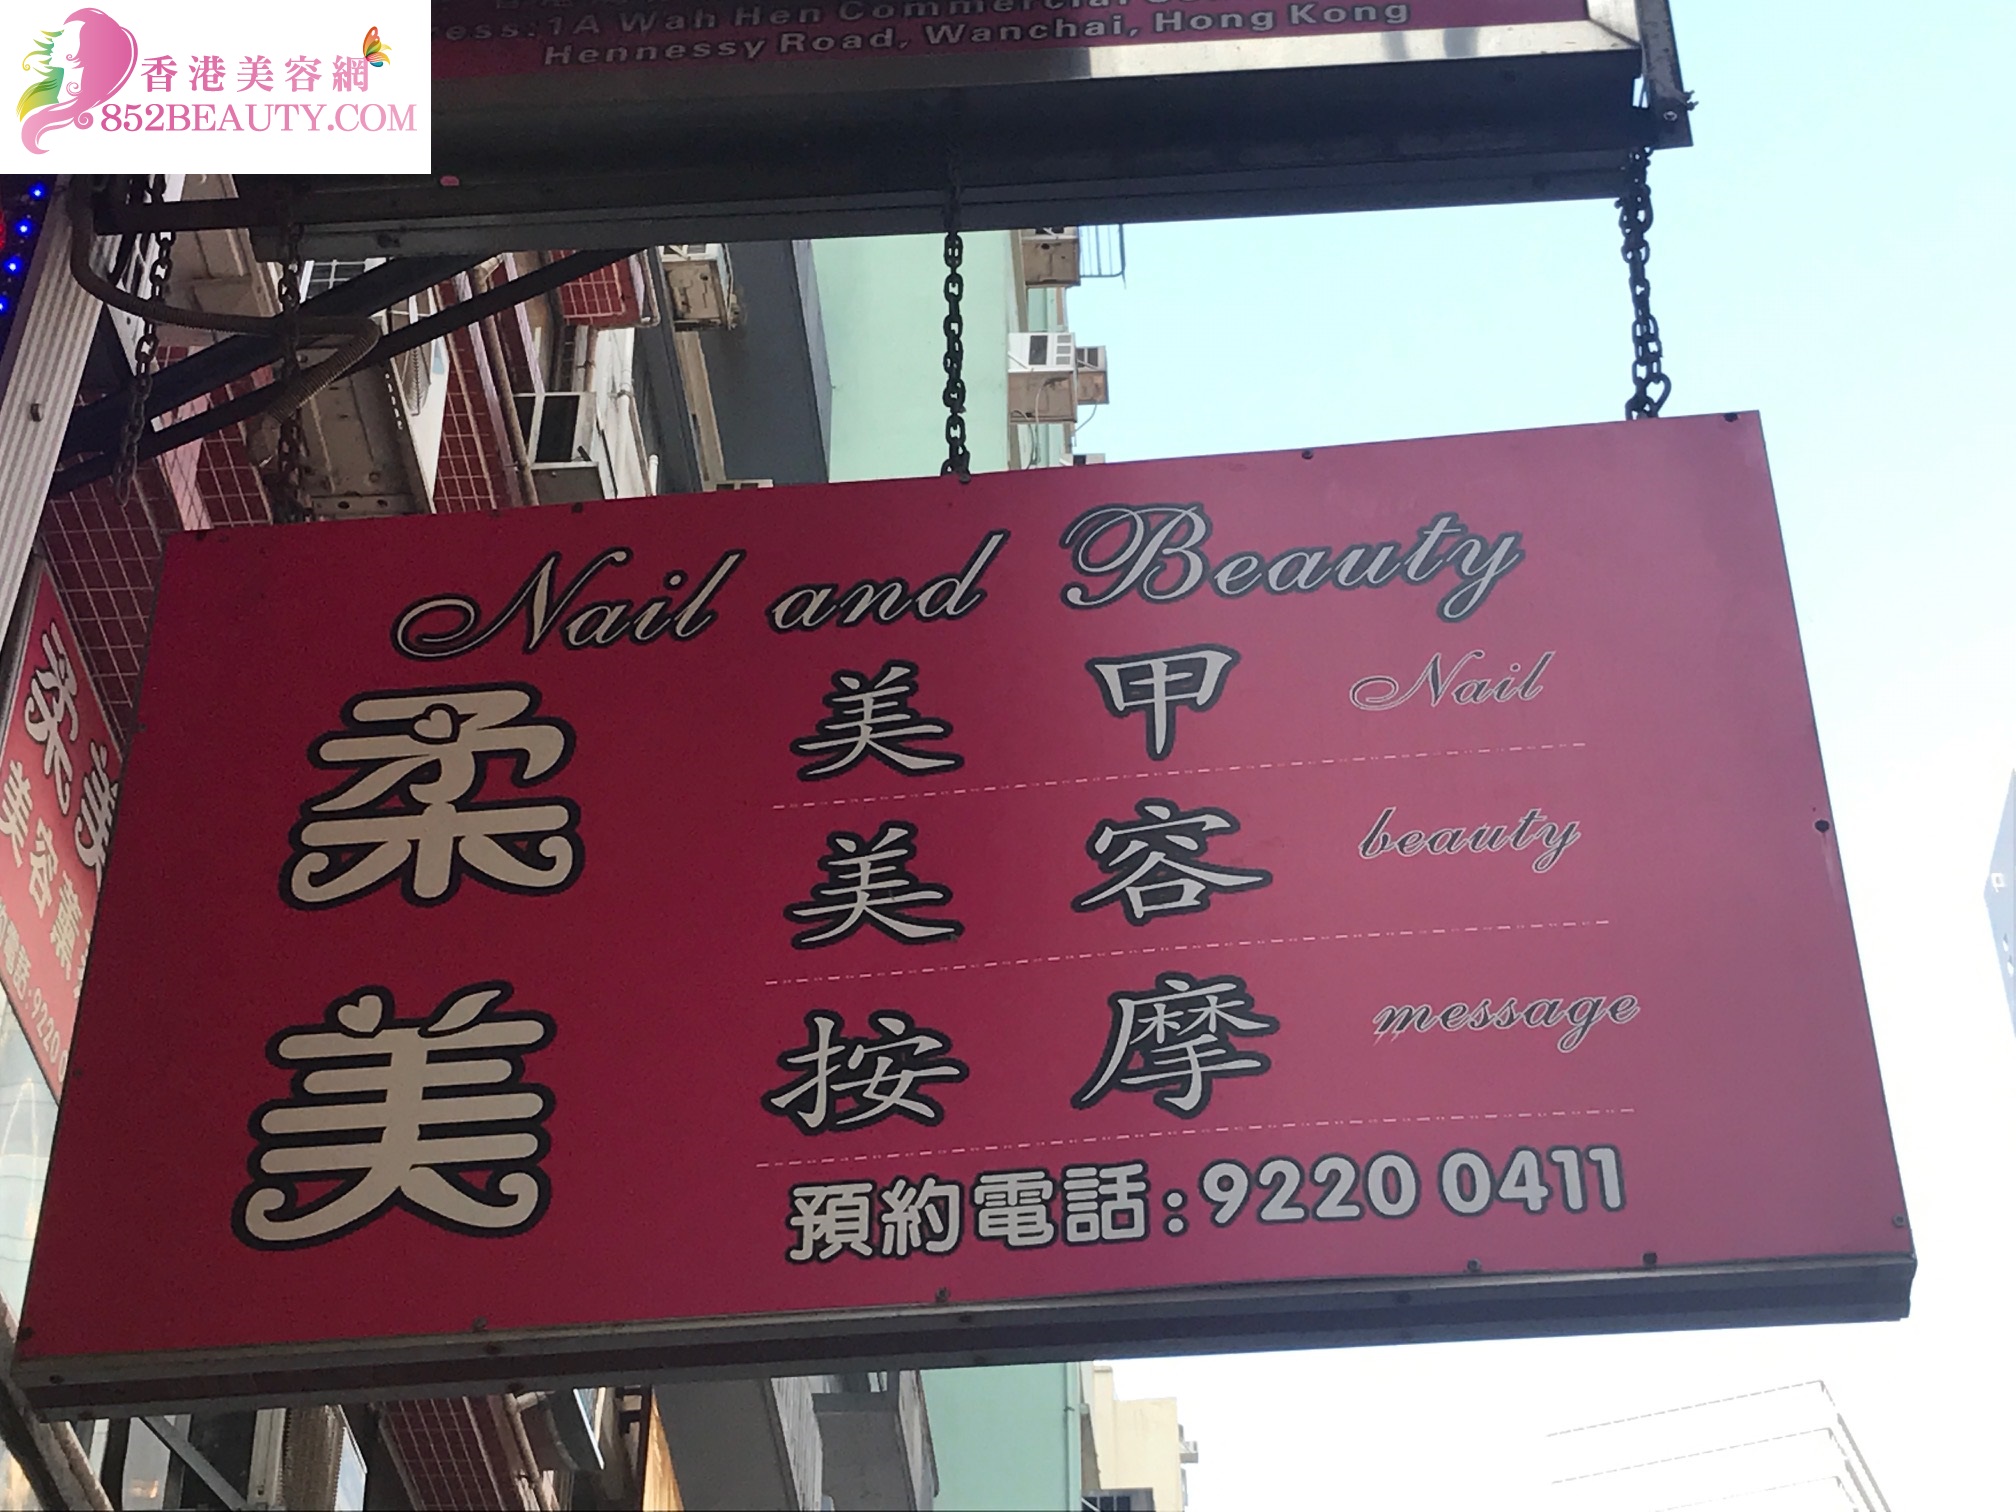 香港美容網 Hong Kong Beauty Salon 美容院 / 美容師: 柔美 Nail & Beauty